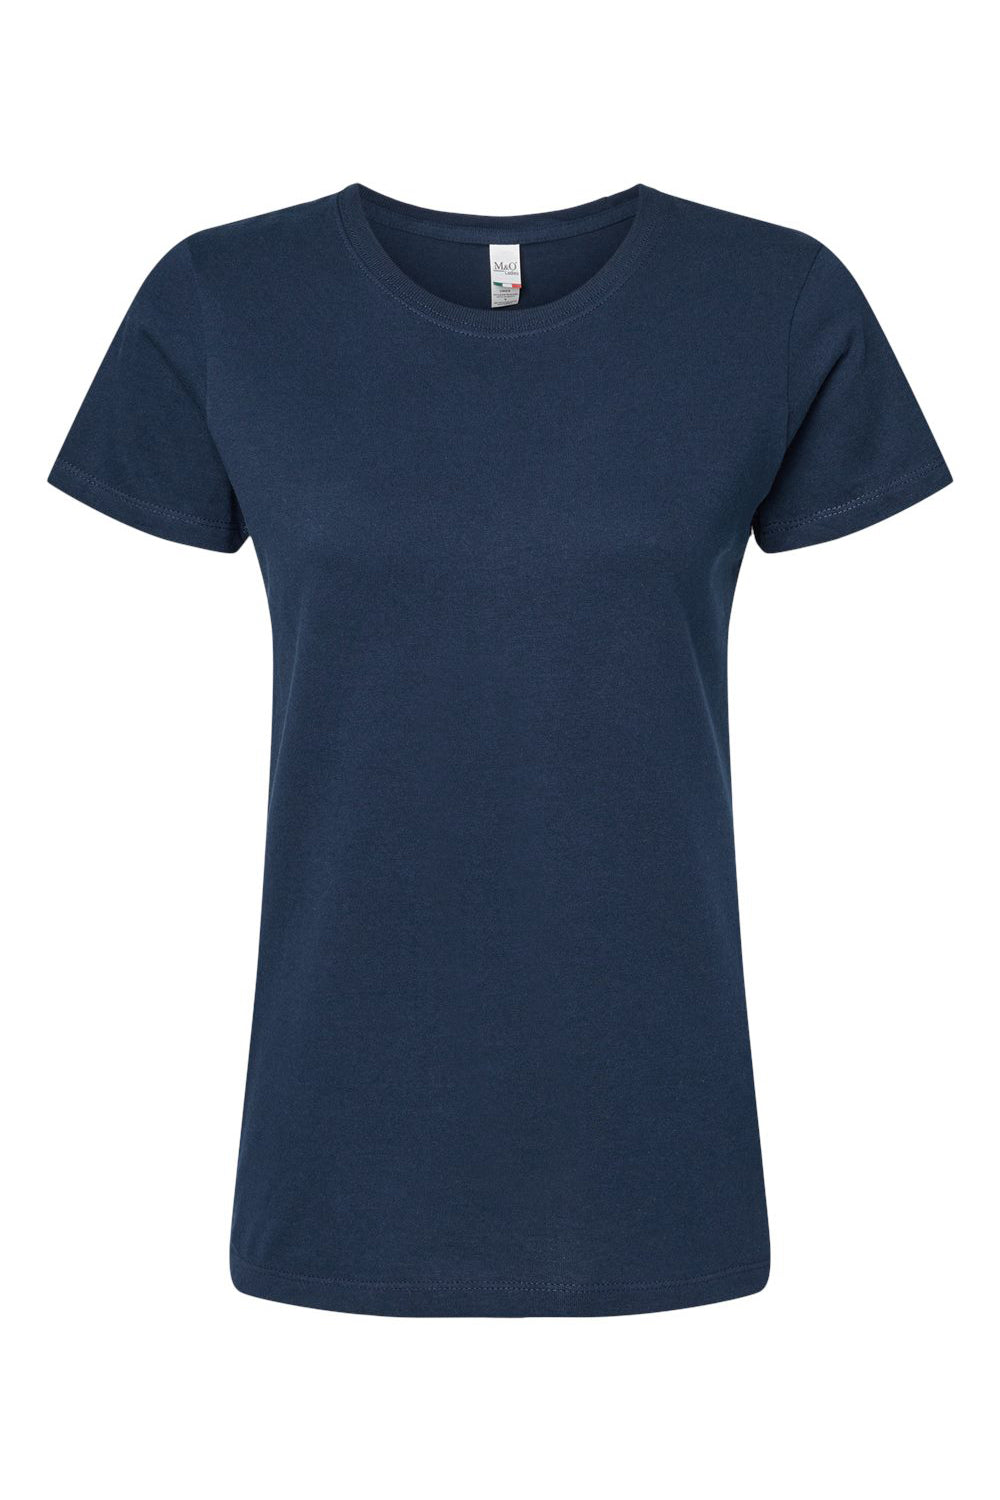 M&O 4810 Womens Gold Soft Touch Short Sleeve Crewneck T-Shirt Deep Navy Blue Flat Front